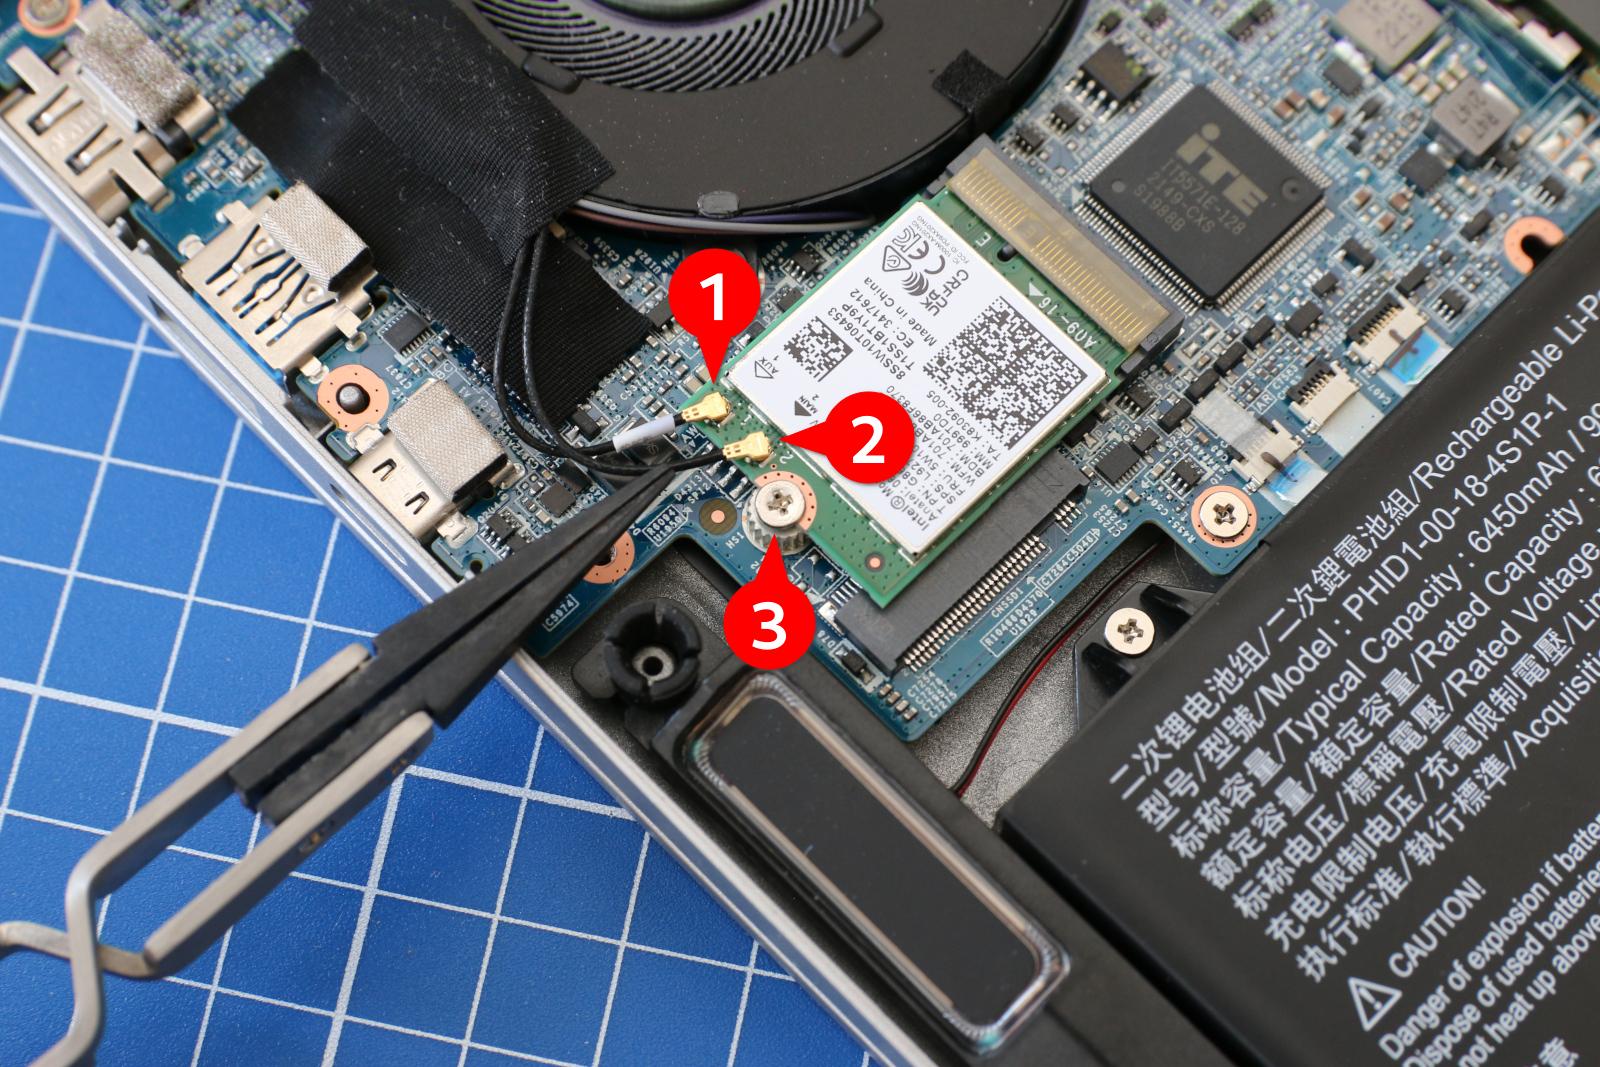 Die in der Regel im Rahmen des Bildschirms eingebauten Antennen für WiFi und Bluetooth werden mit filigranen Steckern an die WLAN-Karte anschlossen. Achten Sie beim Anstecken auf einen korrekten Sitz der Stecker auf den Buchsen.